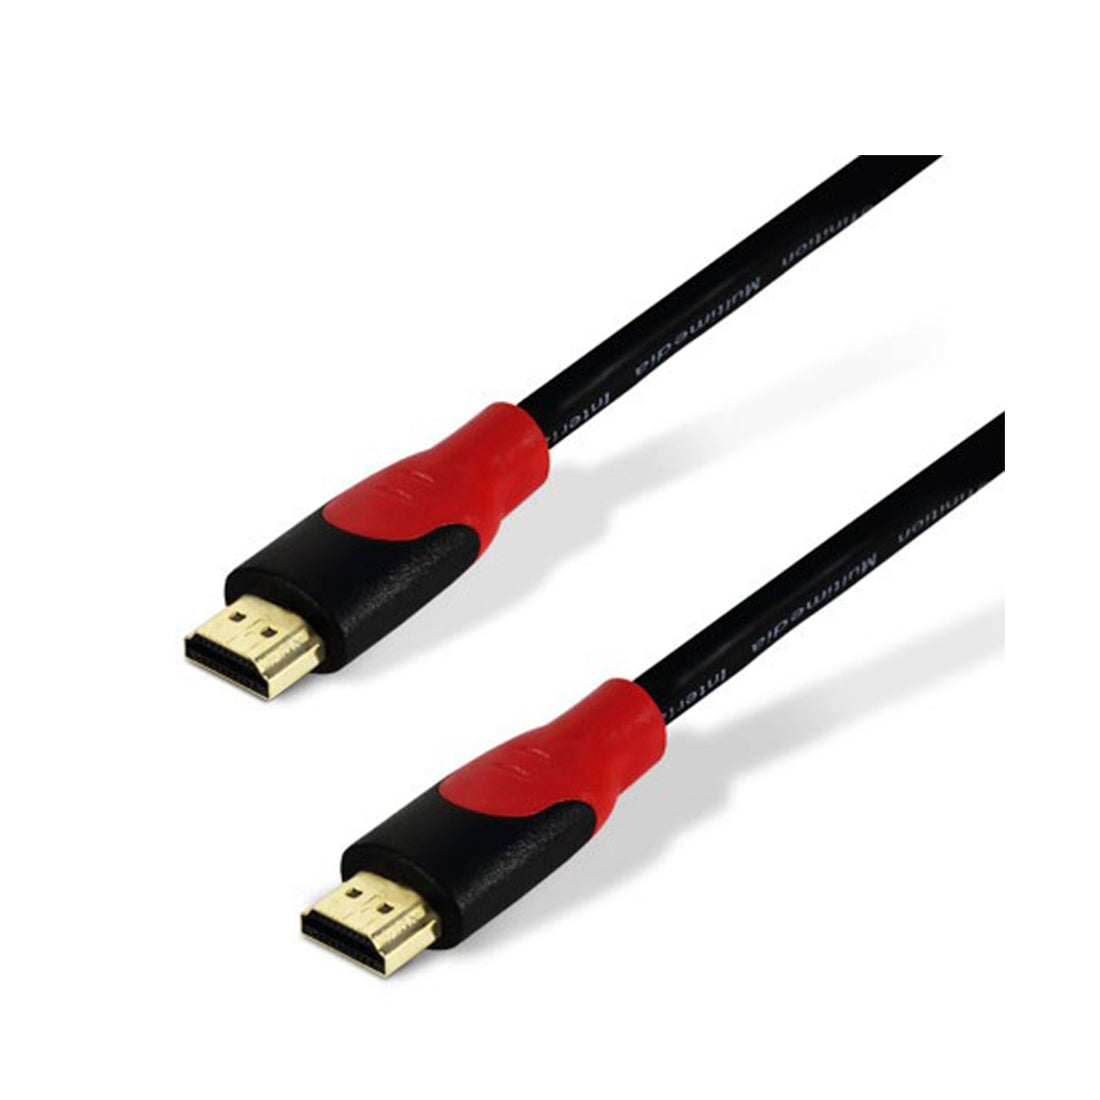 SH-6016-5P - интерфейсный кабель HDMI-HDMI, длина 5 метра в пакете